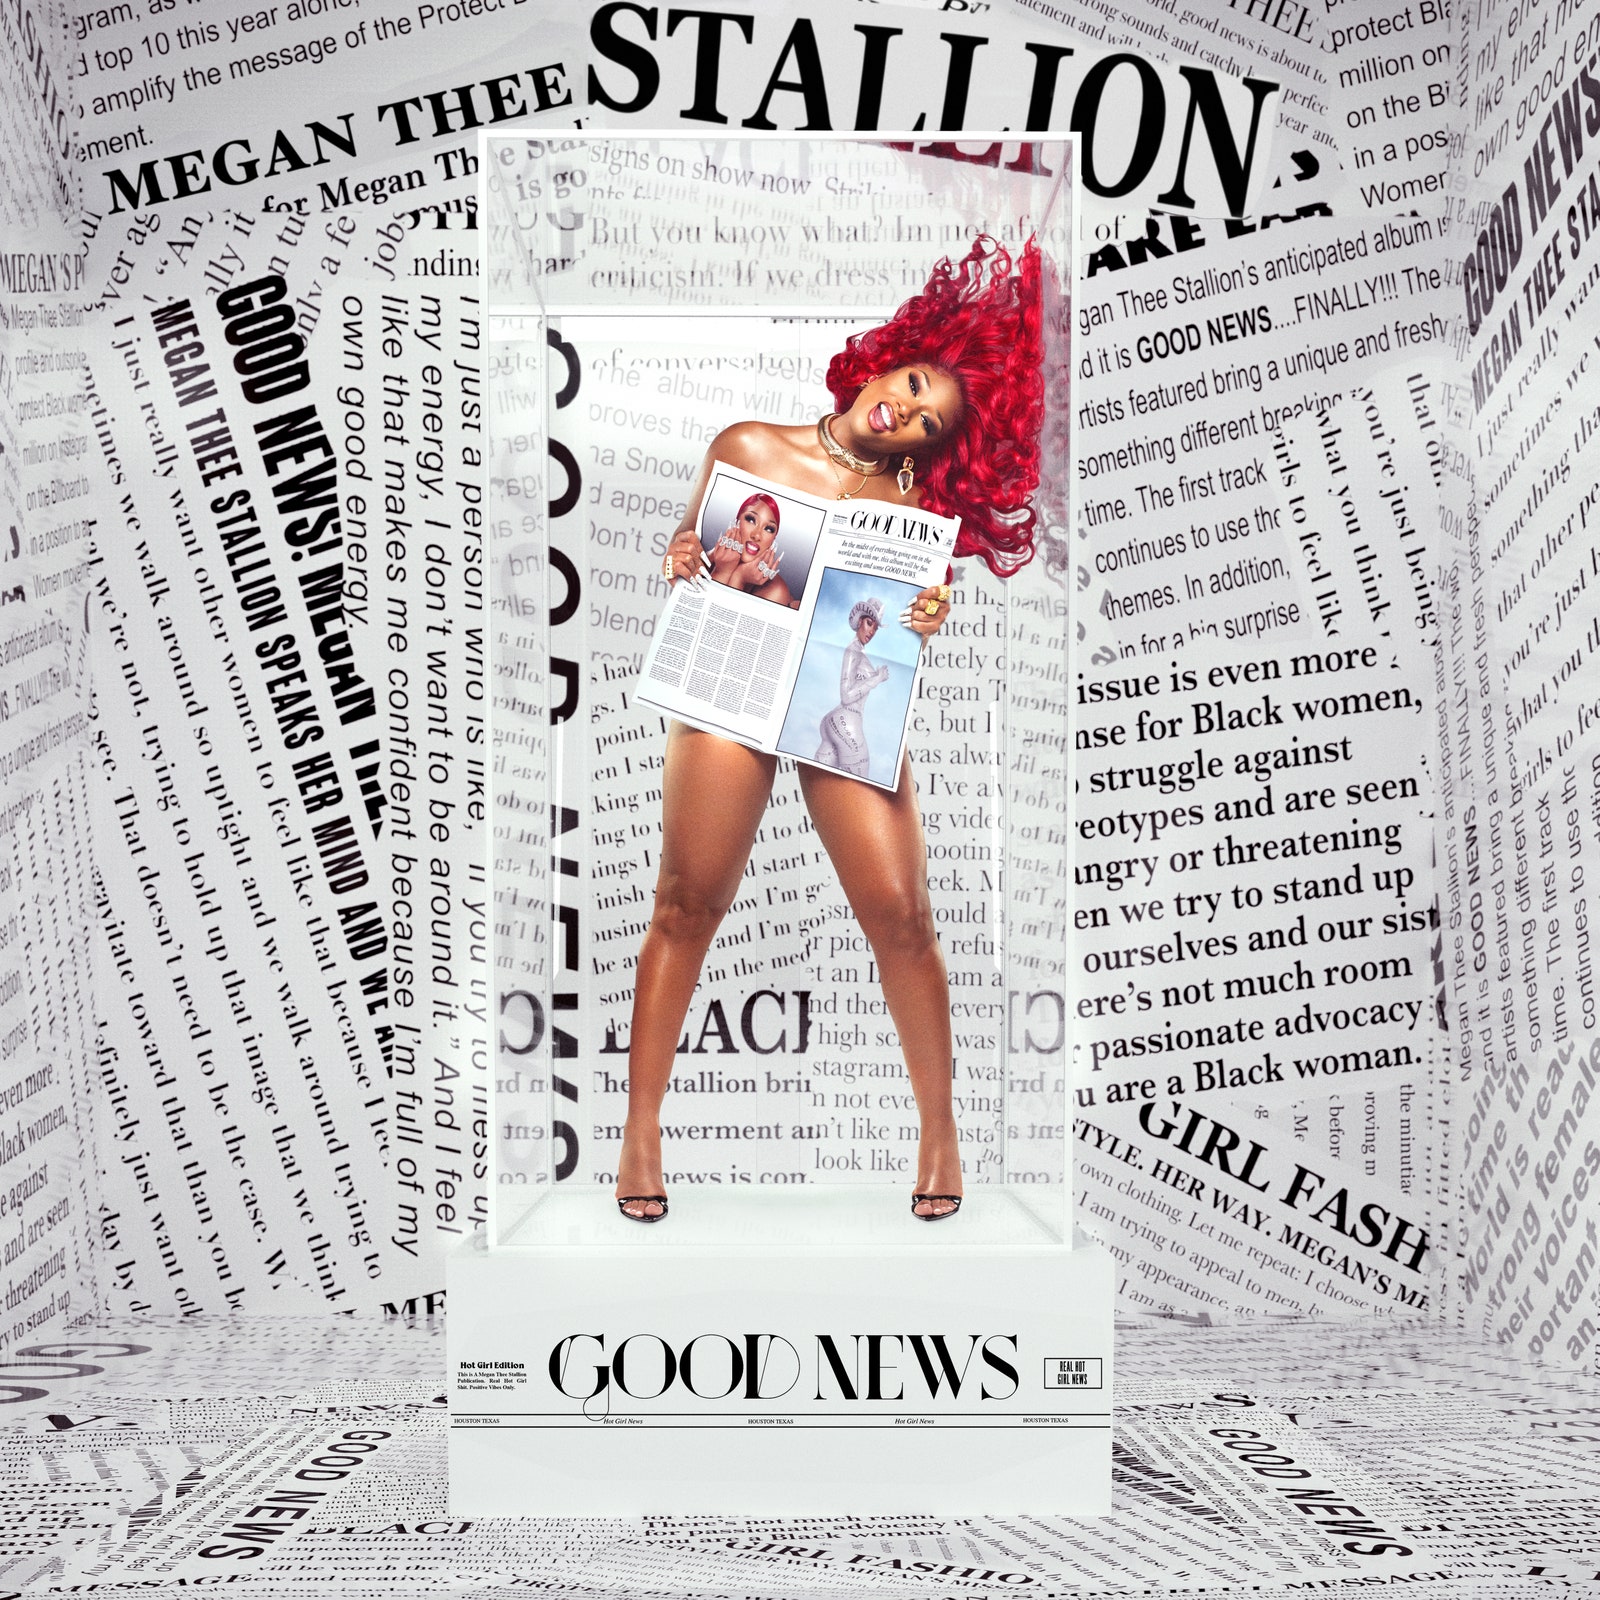 Megan Thee Stallion – Good News (Album Review)